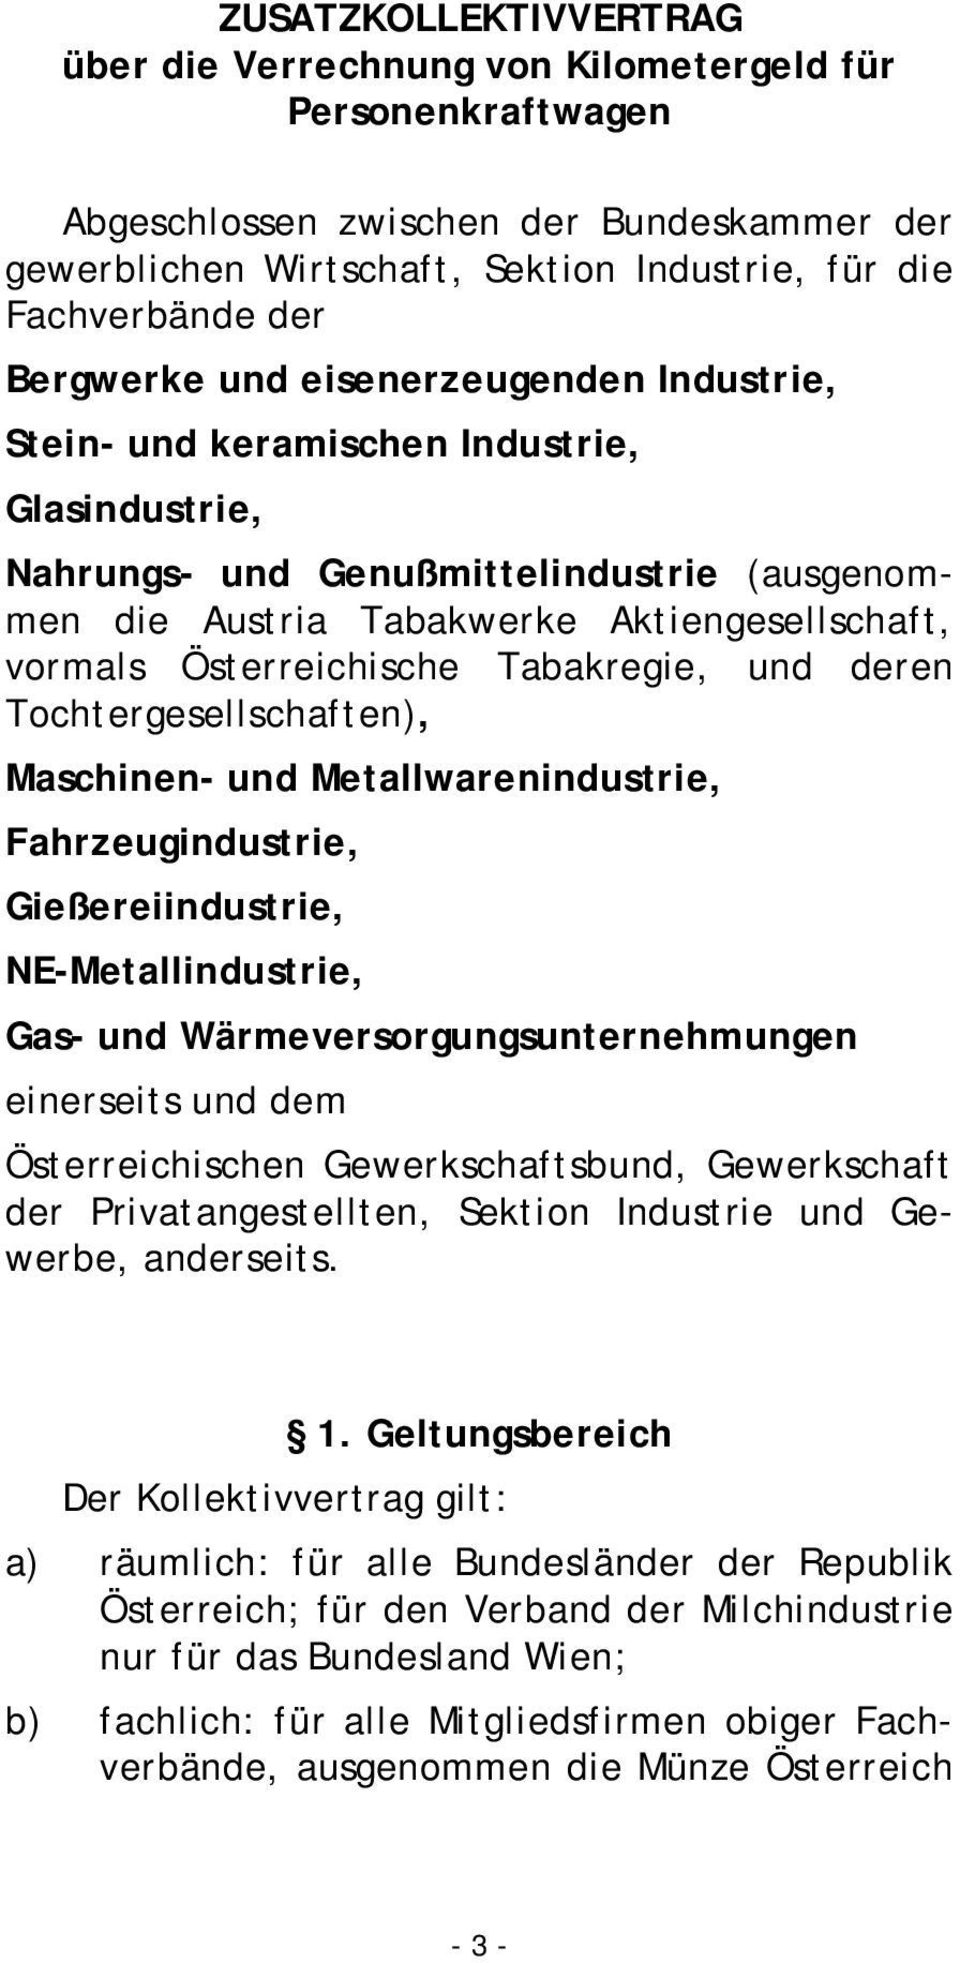 Österreichische Tabakregie, und deren Tochtergesellschaften), Maschinen- und Metallwarenindustrie, Fahrzeugindustrie, Gießereiindustrie, NE-Metallindustrie, Gas- und Wärmeversorgungsunternehmungen